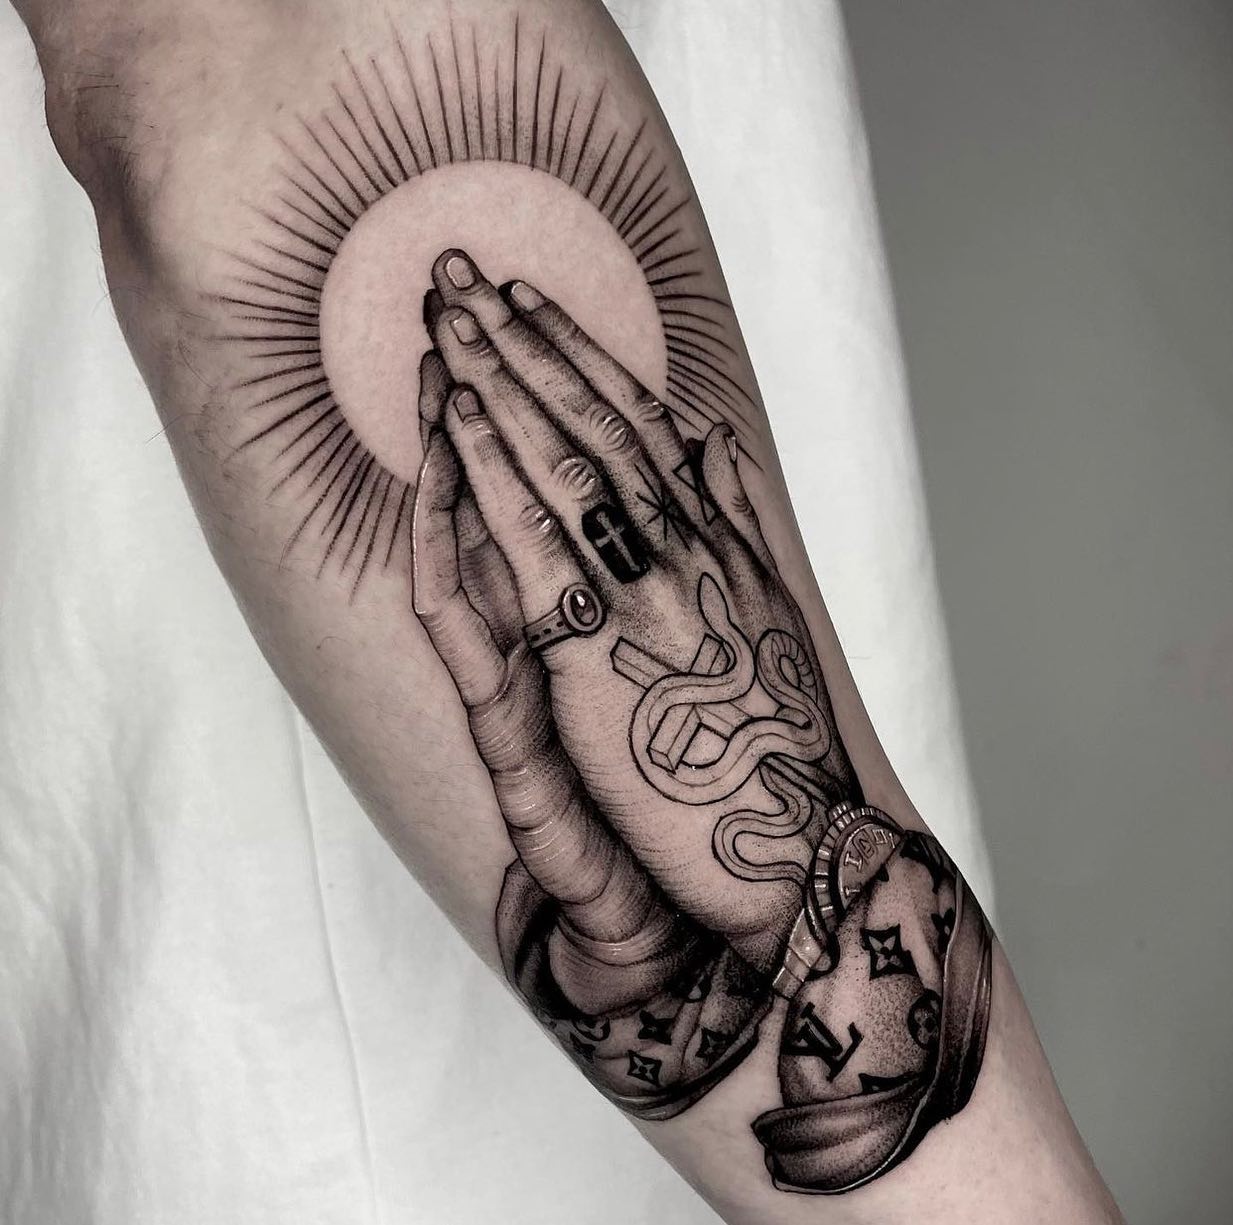 Tatuaje de manos rezando elegante